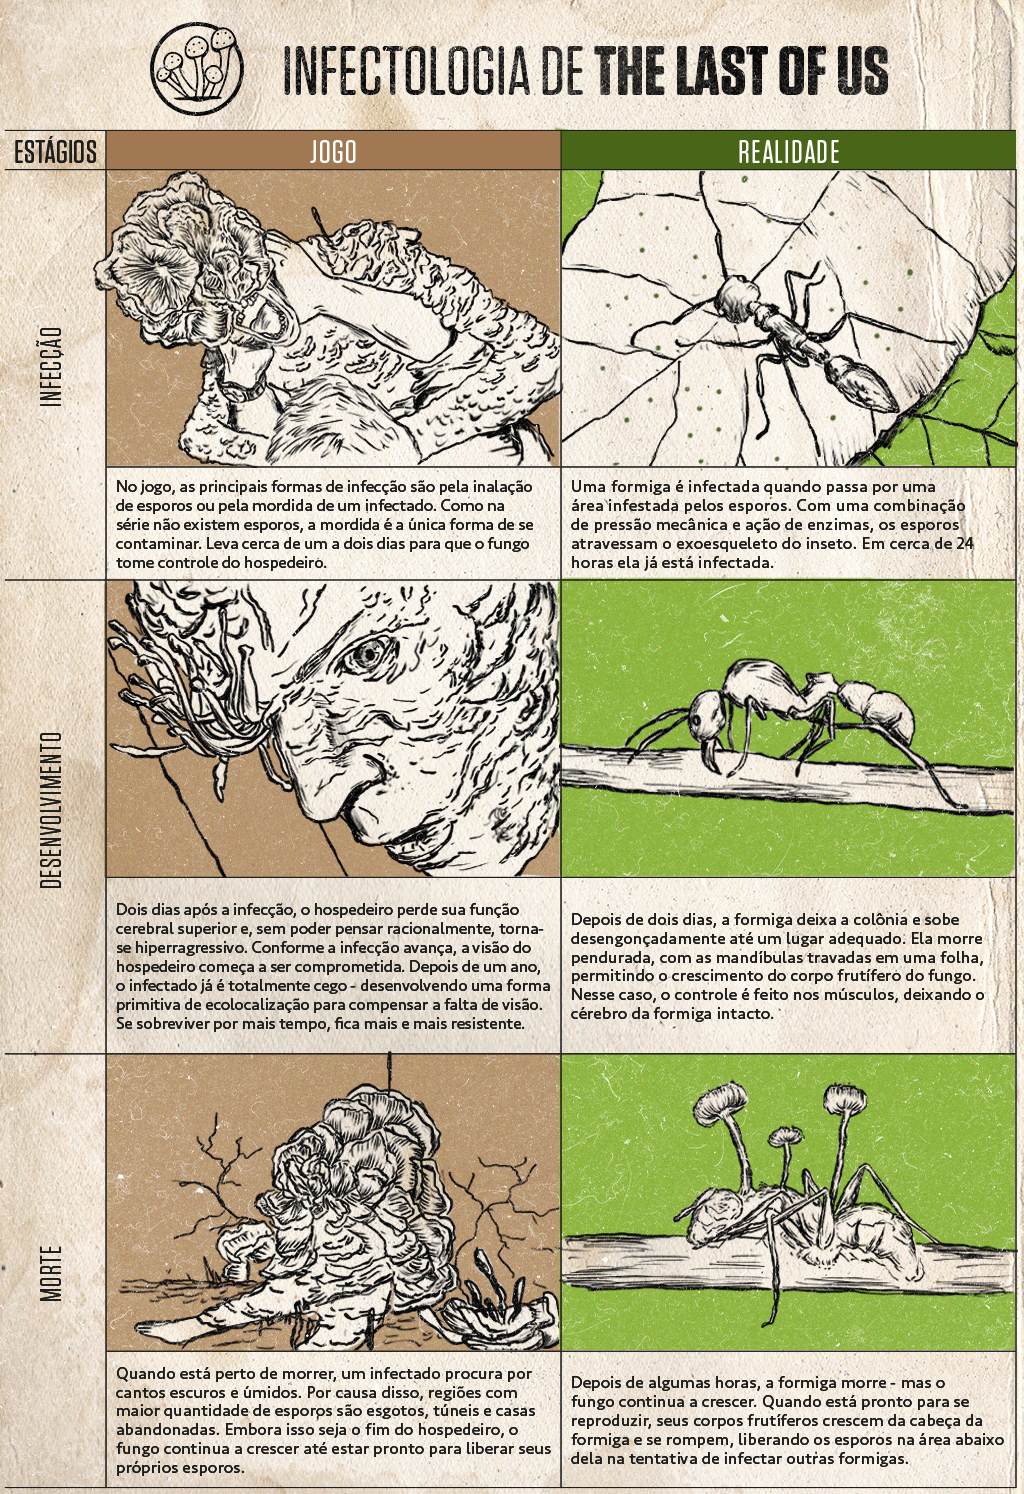 Quadro ilustrado comparando a infecção vista no jogo The Last Of Us e na realidade.